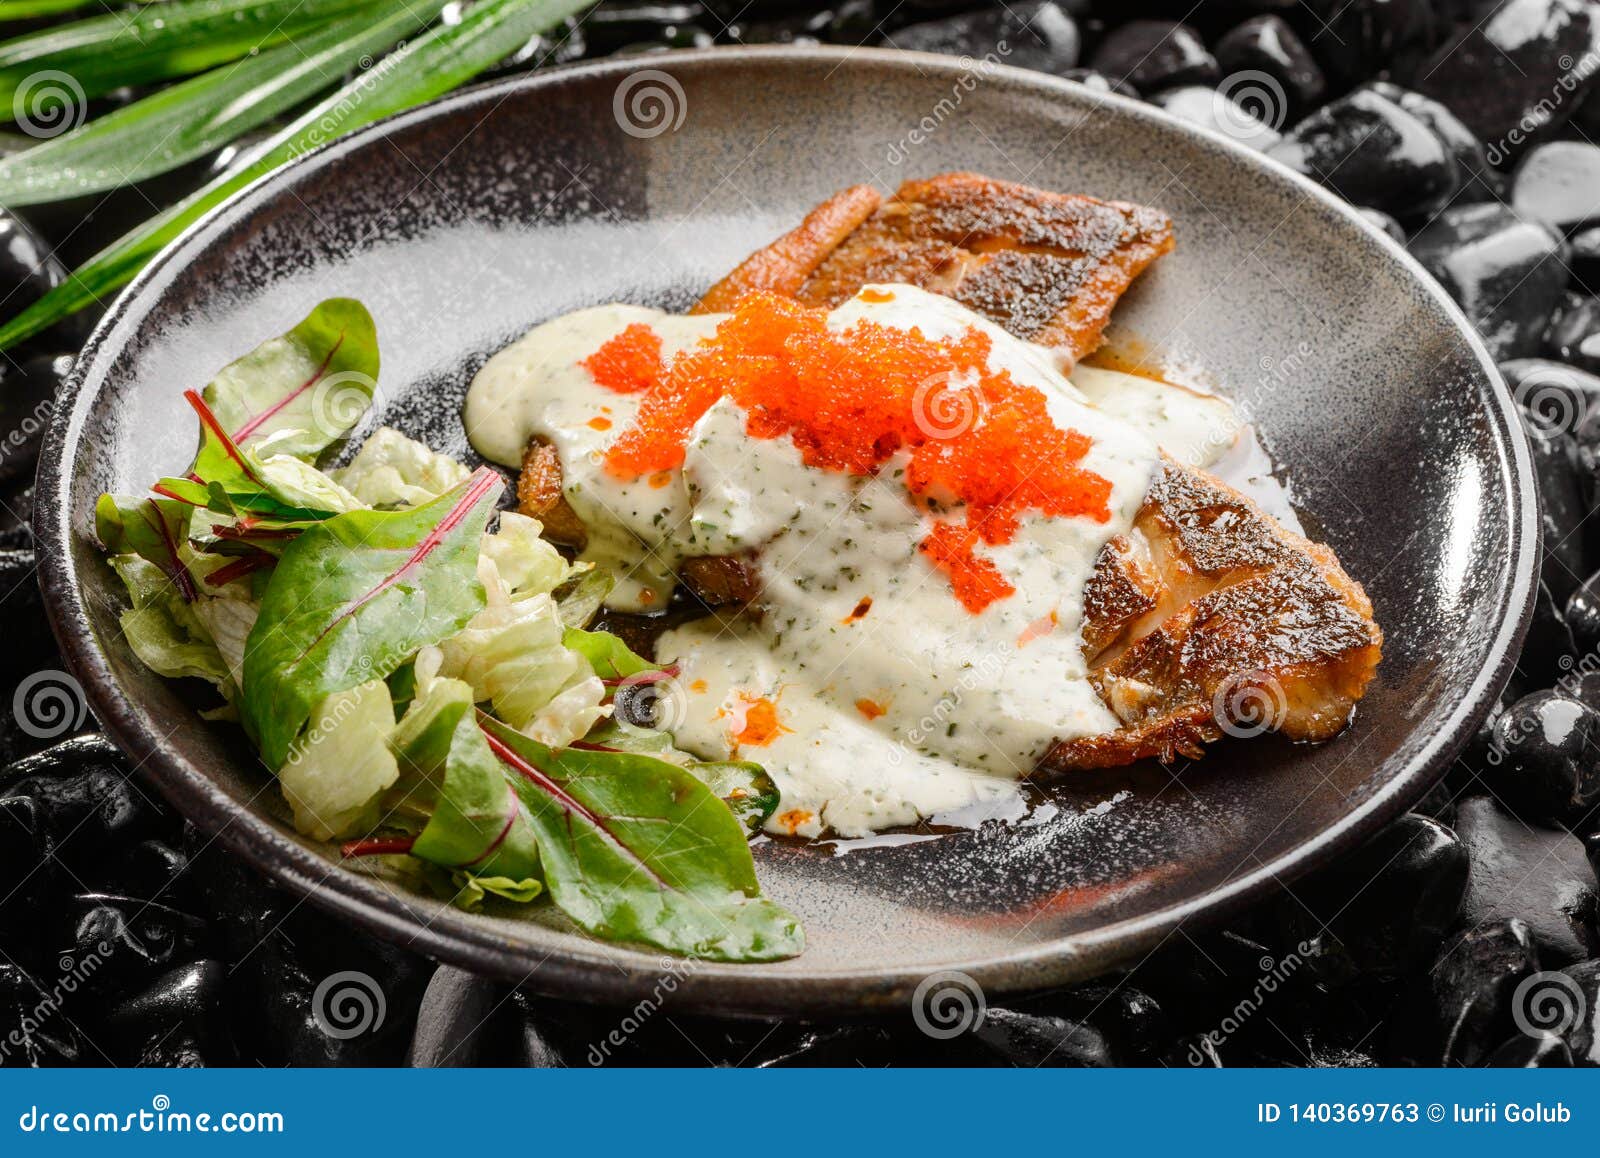 Gourmet seafood dish stock image. Image of feng, menu ...